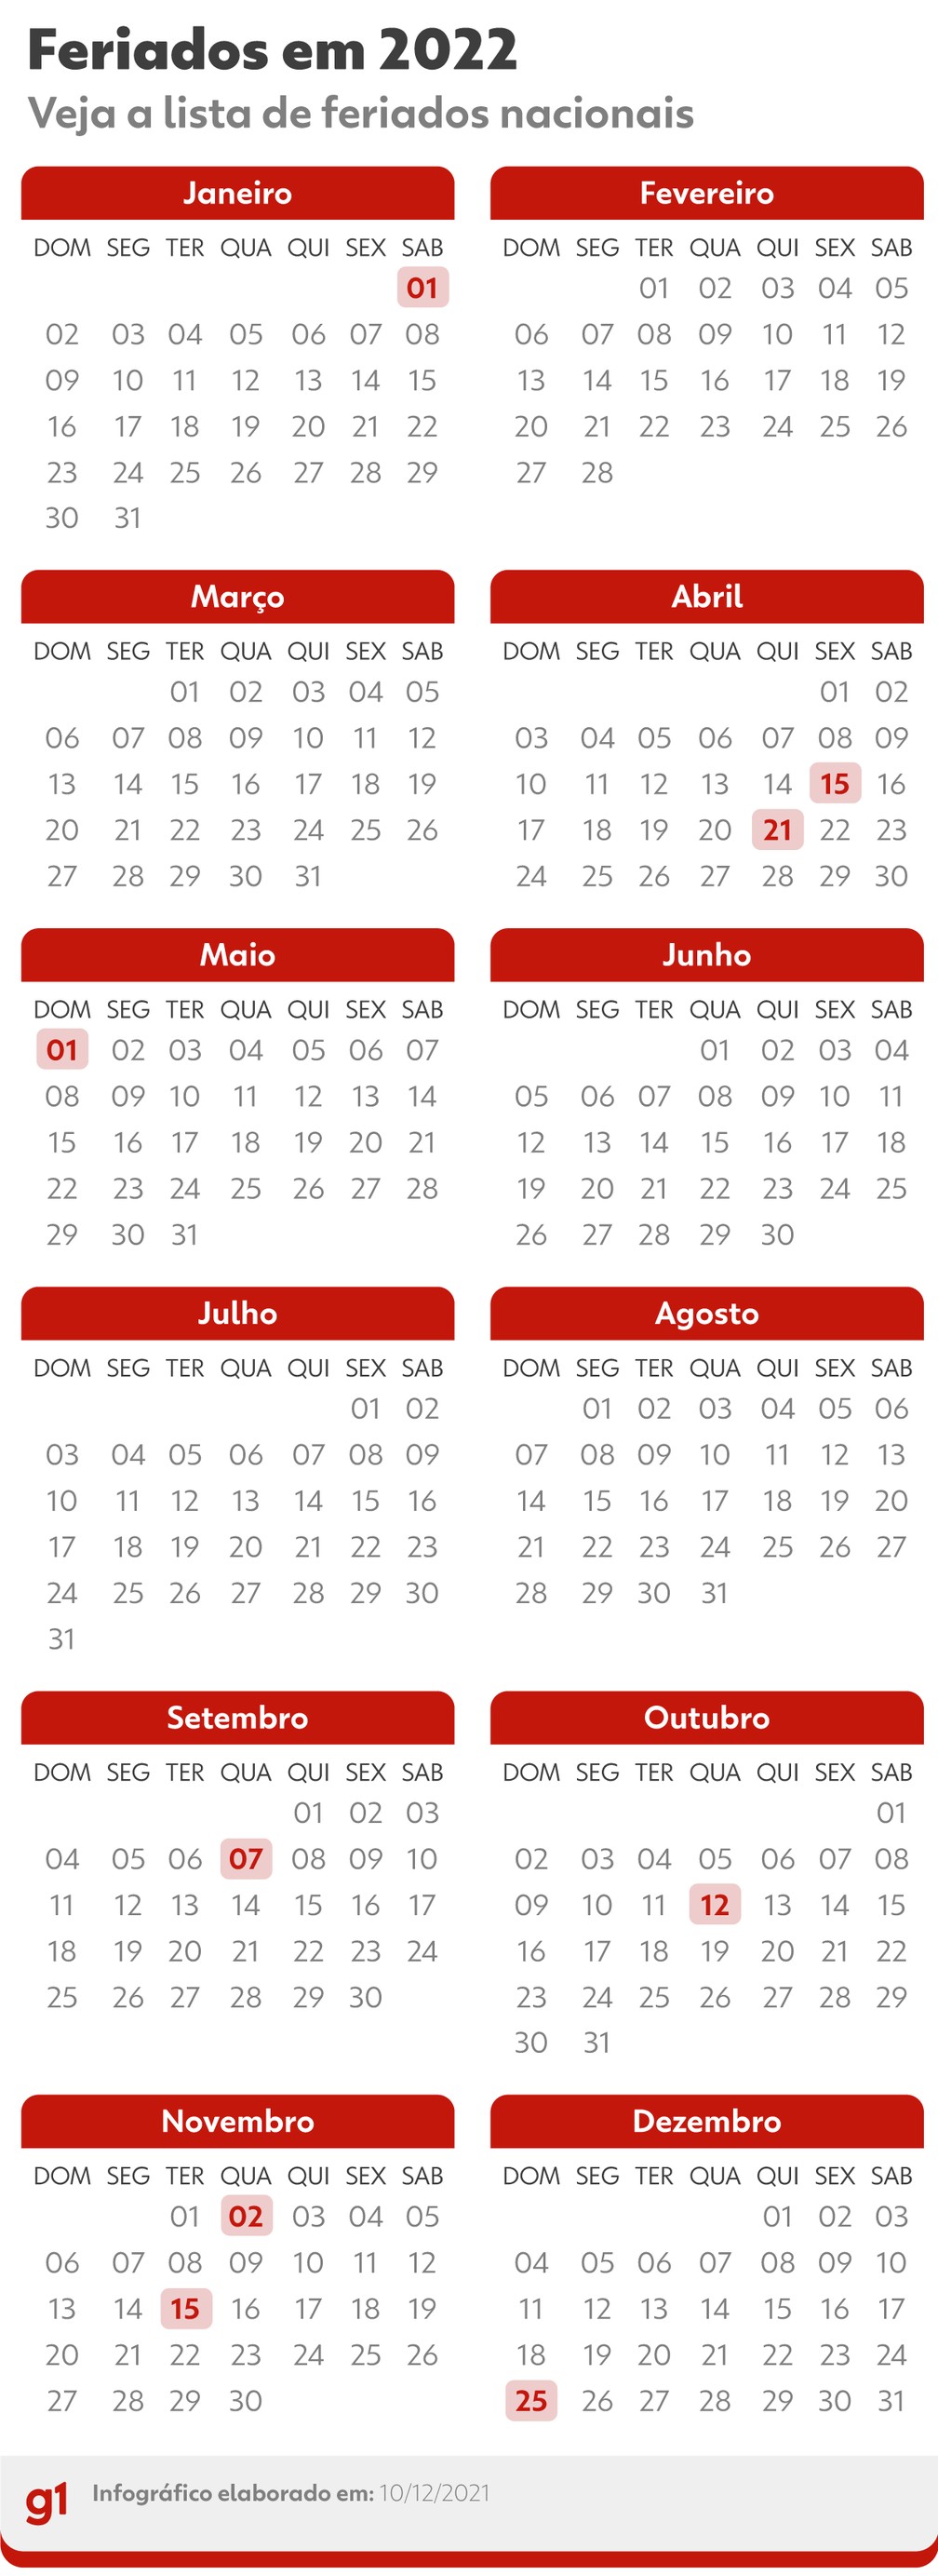 Veja os feriados nacionais do calendário 2022